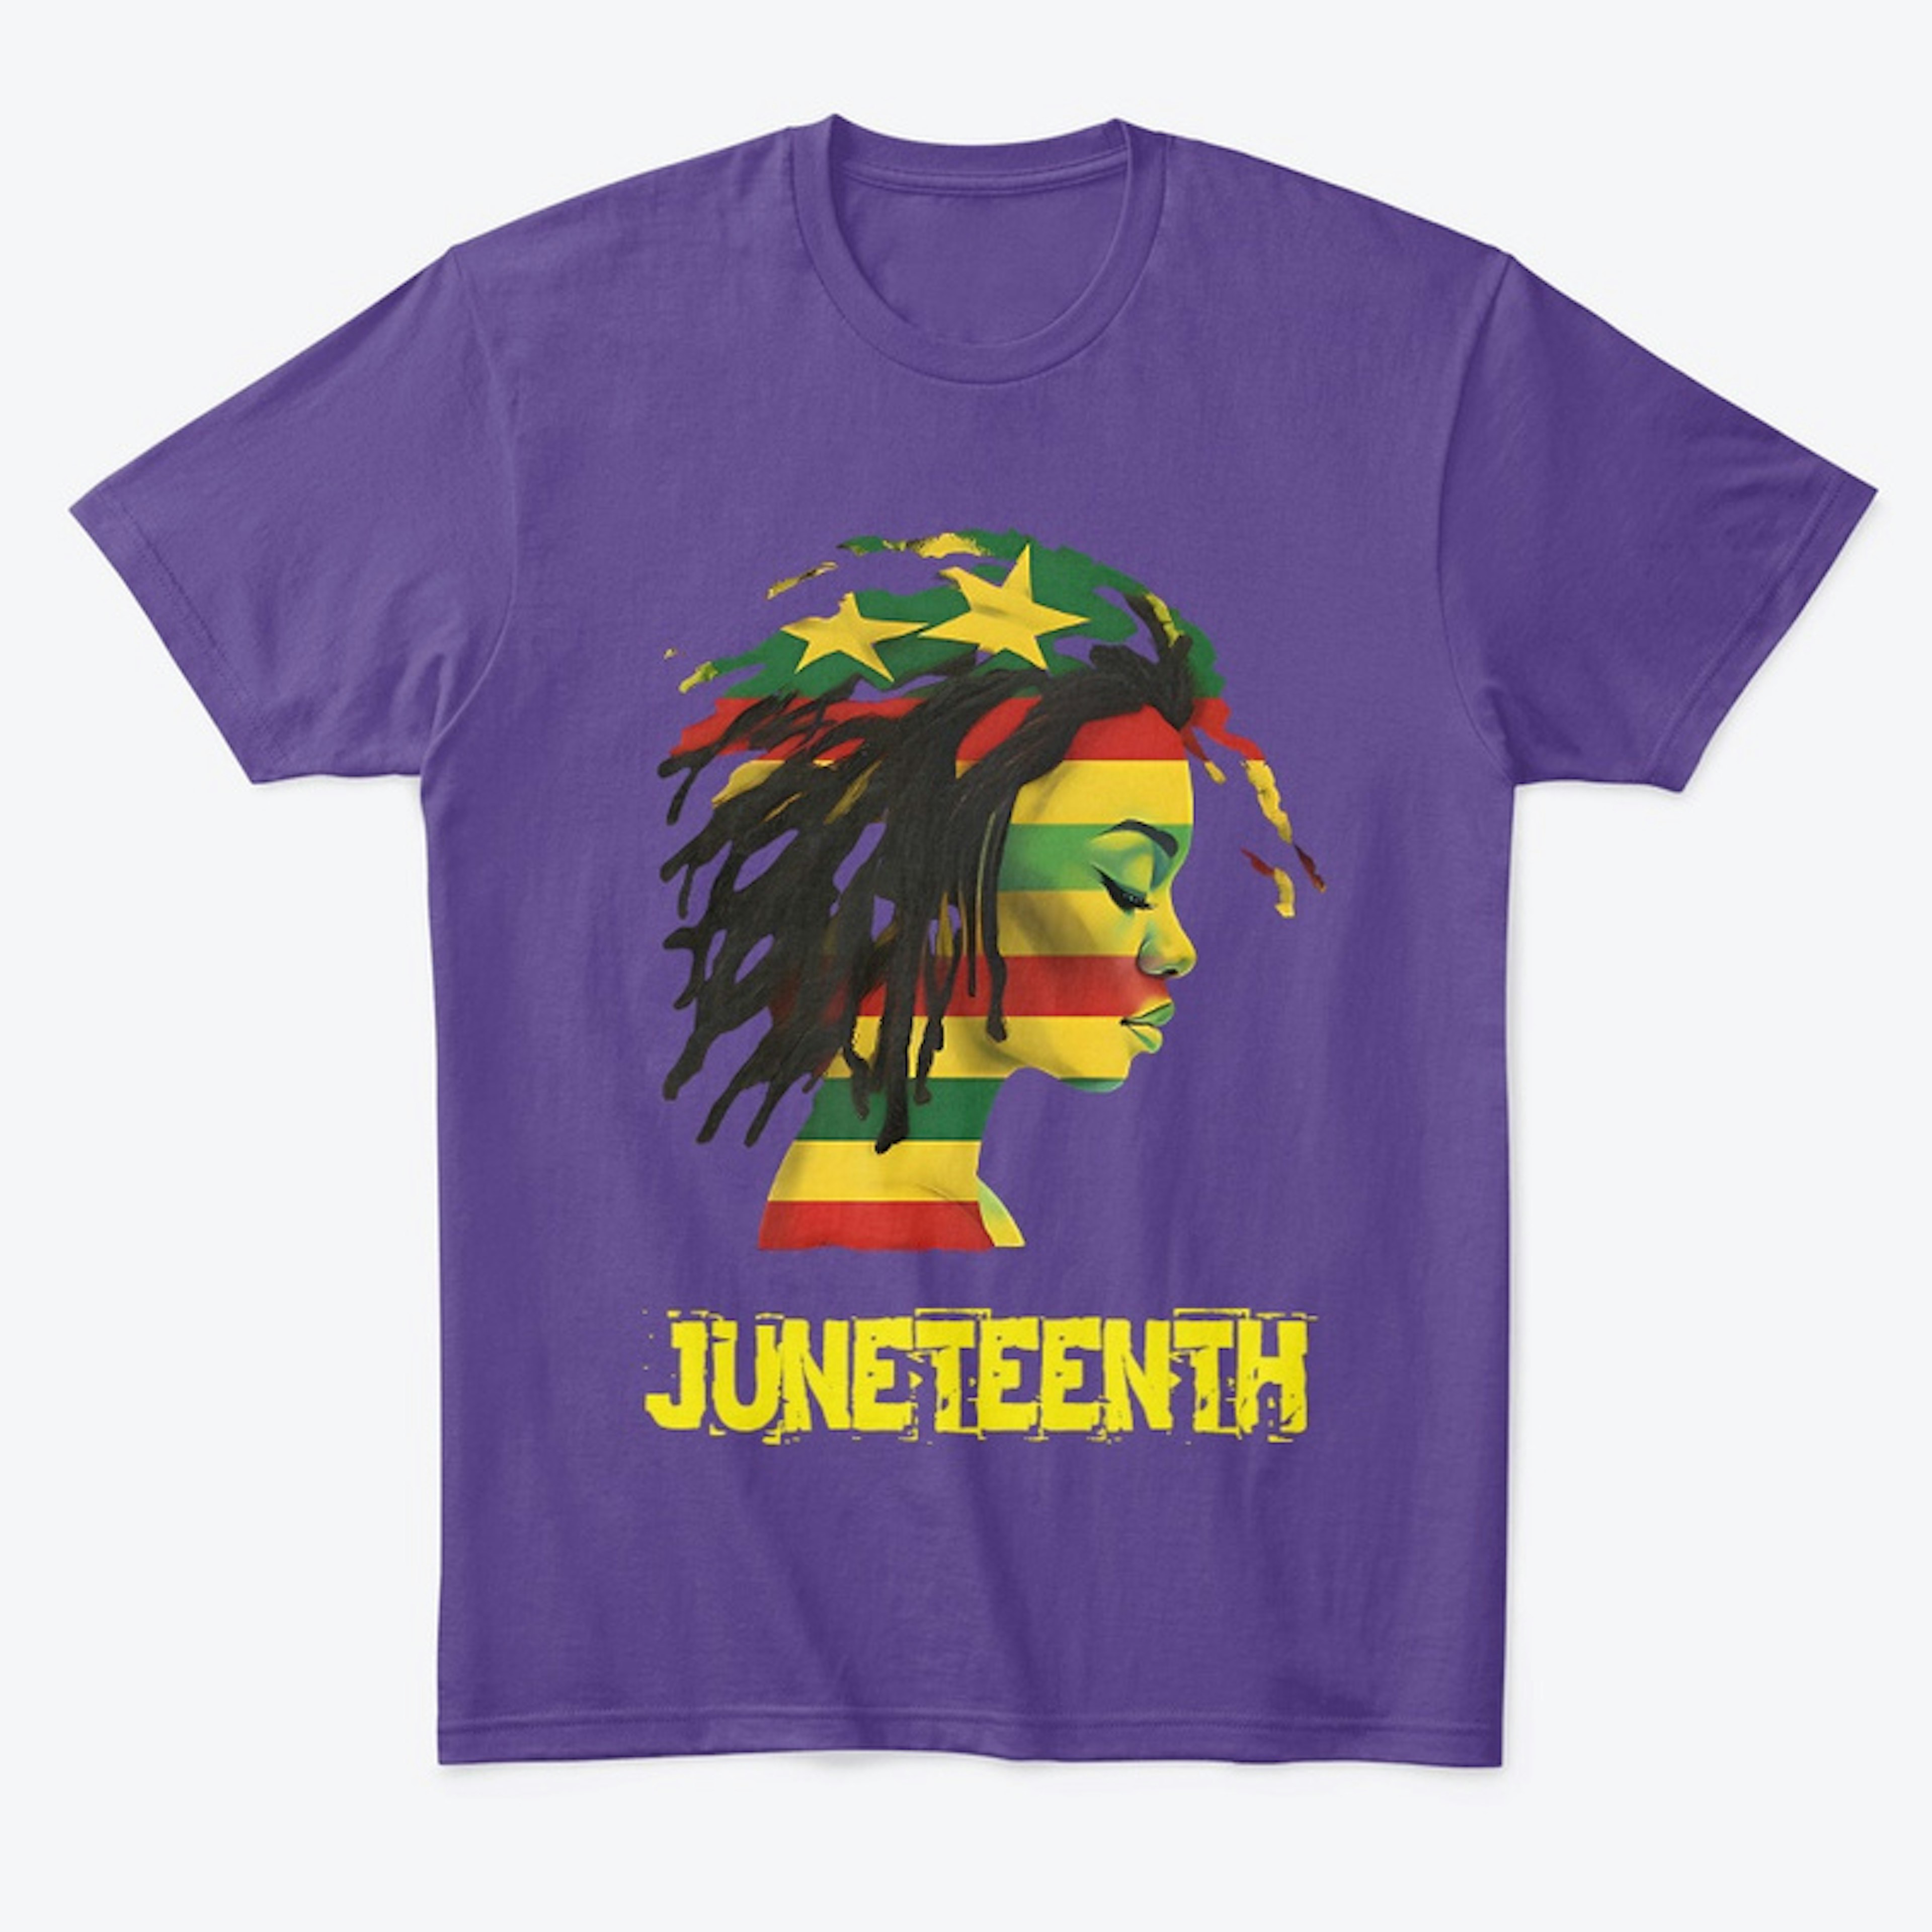 Juneteenth Shirt For Women